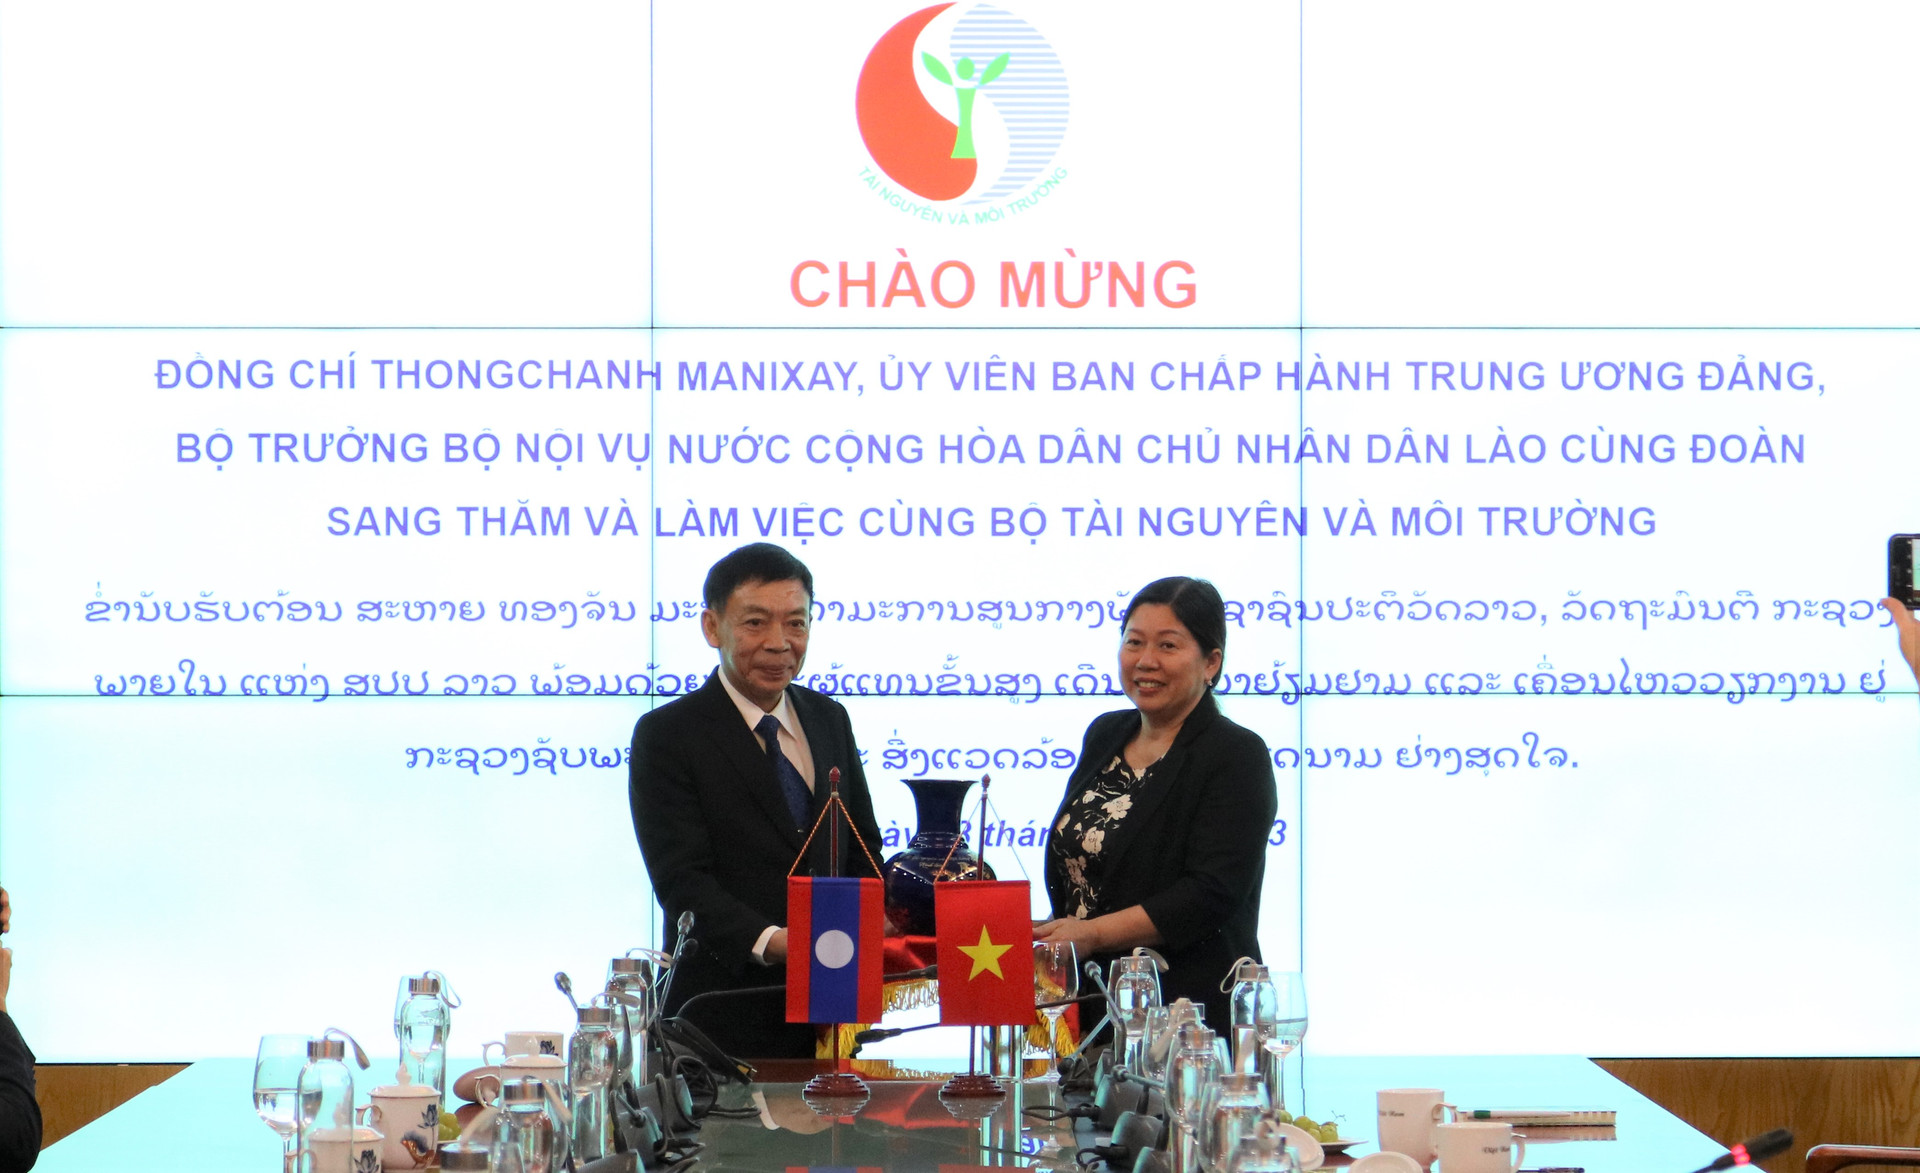 Việt Nam và Lào tiếp tục hợp tác về đo đạc, bản đồ